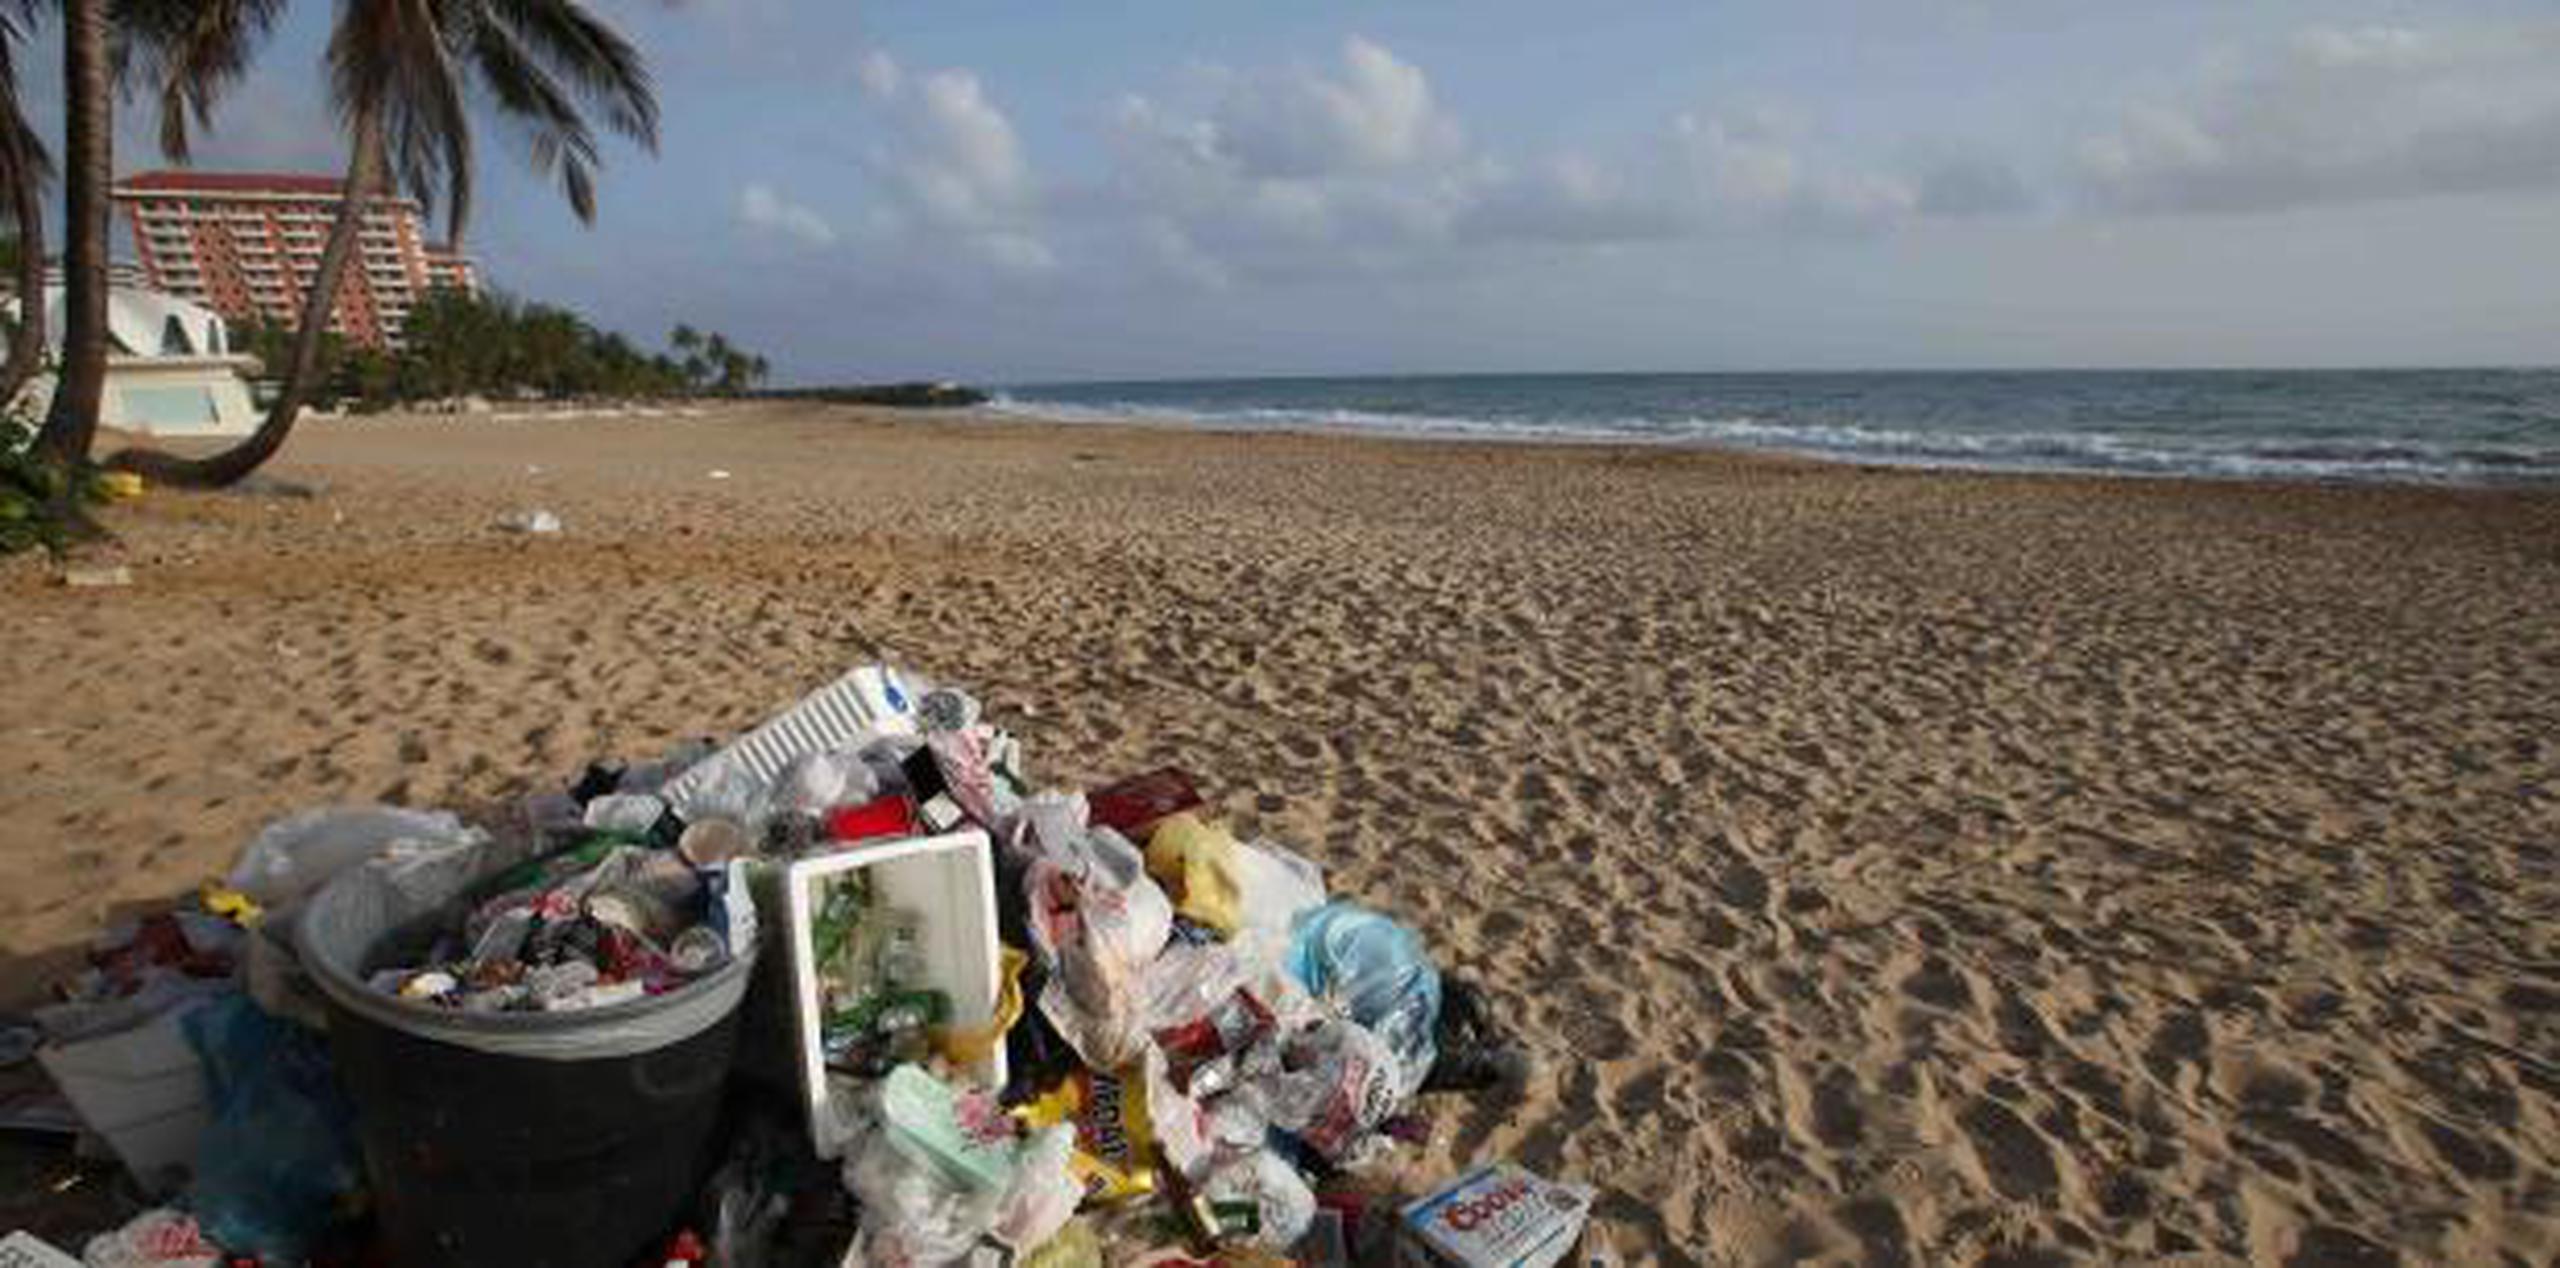 "Para los que no hayan desarrollado conciencia sobre el problema de desperdicios sólidos, debo recordarles que arrojar basura fuera de los zafacones en áreas públicas también es un delito", dijo Tania Vázquez, secretaria del DRNA. (archivo)